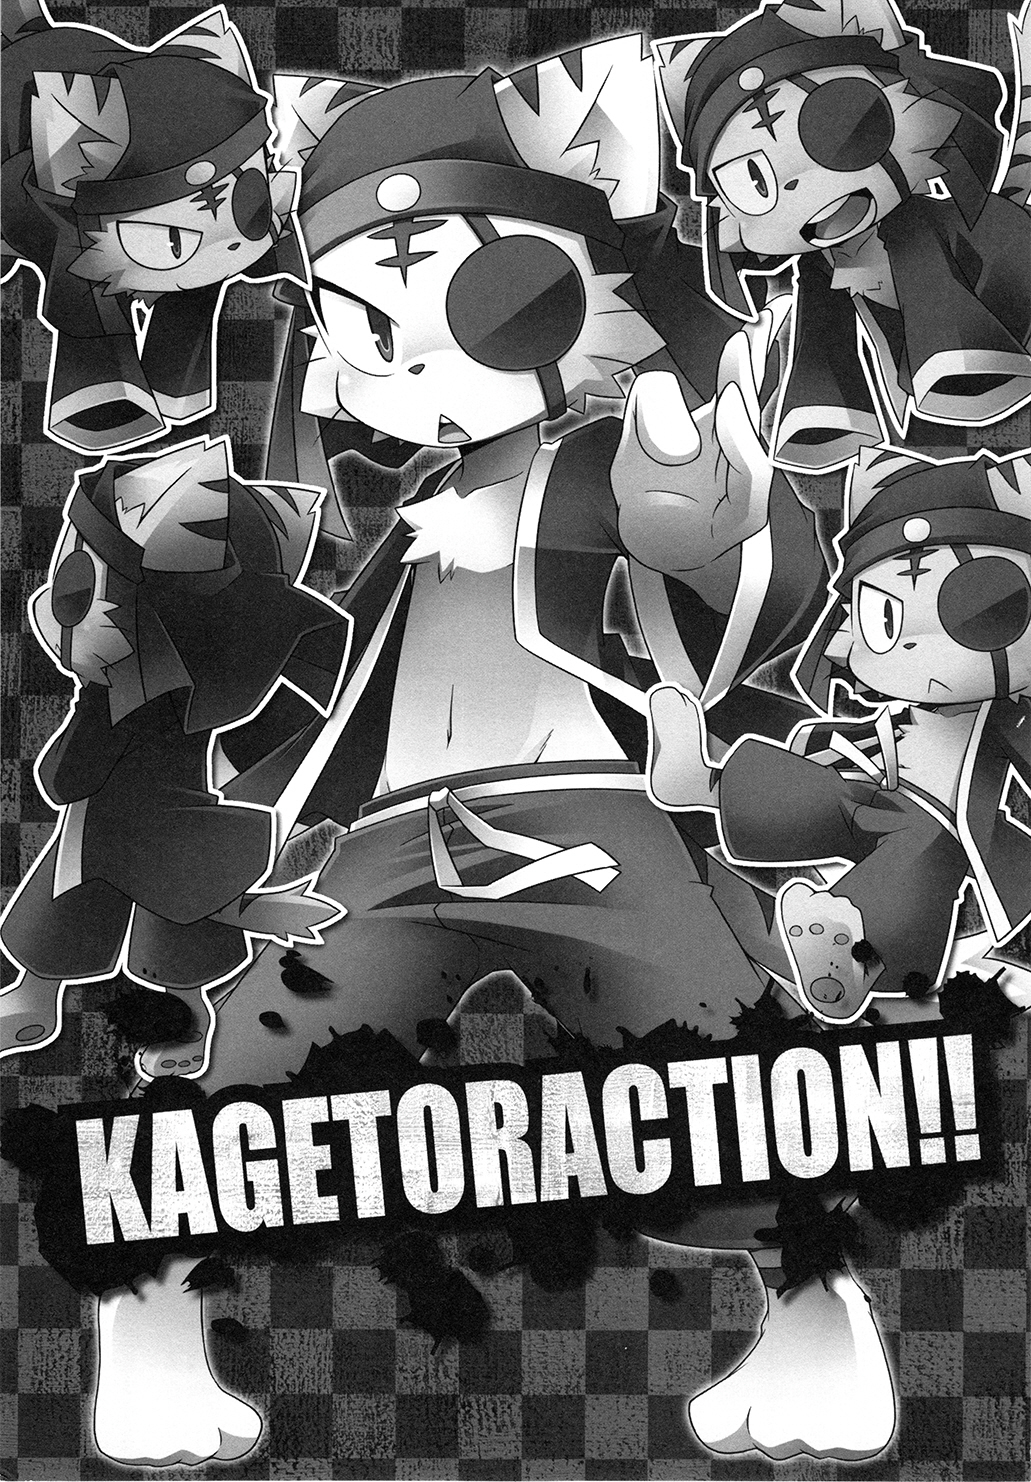 Kagetoraction !!